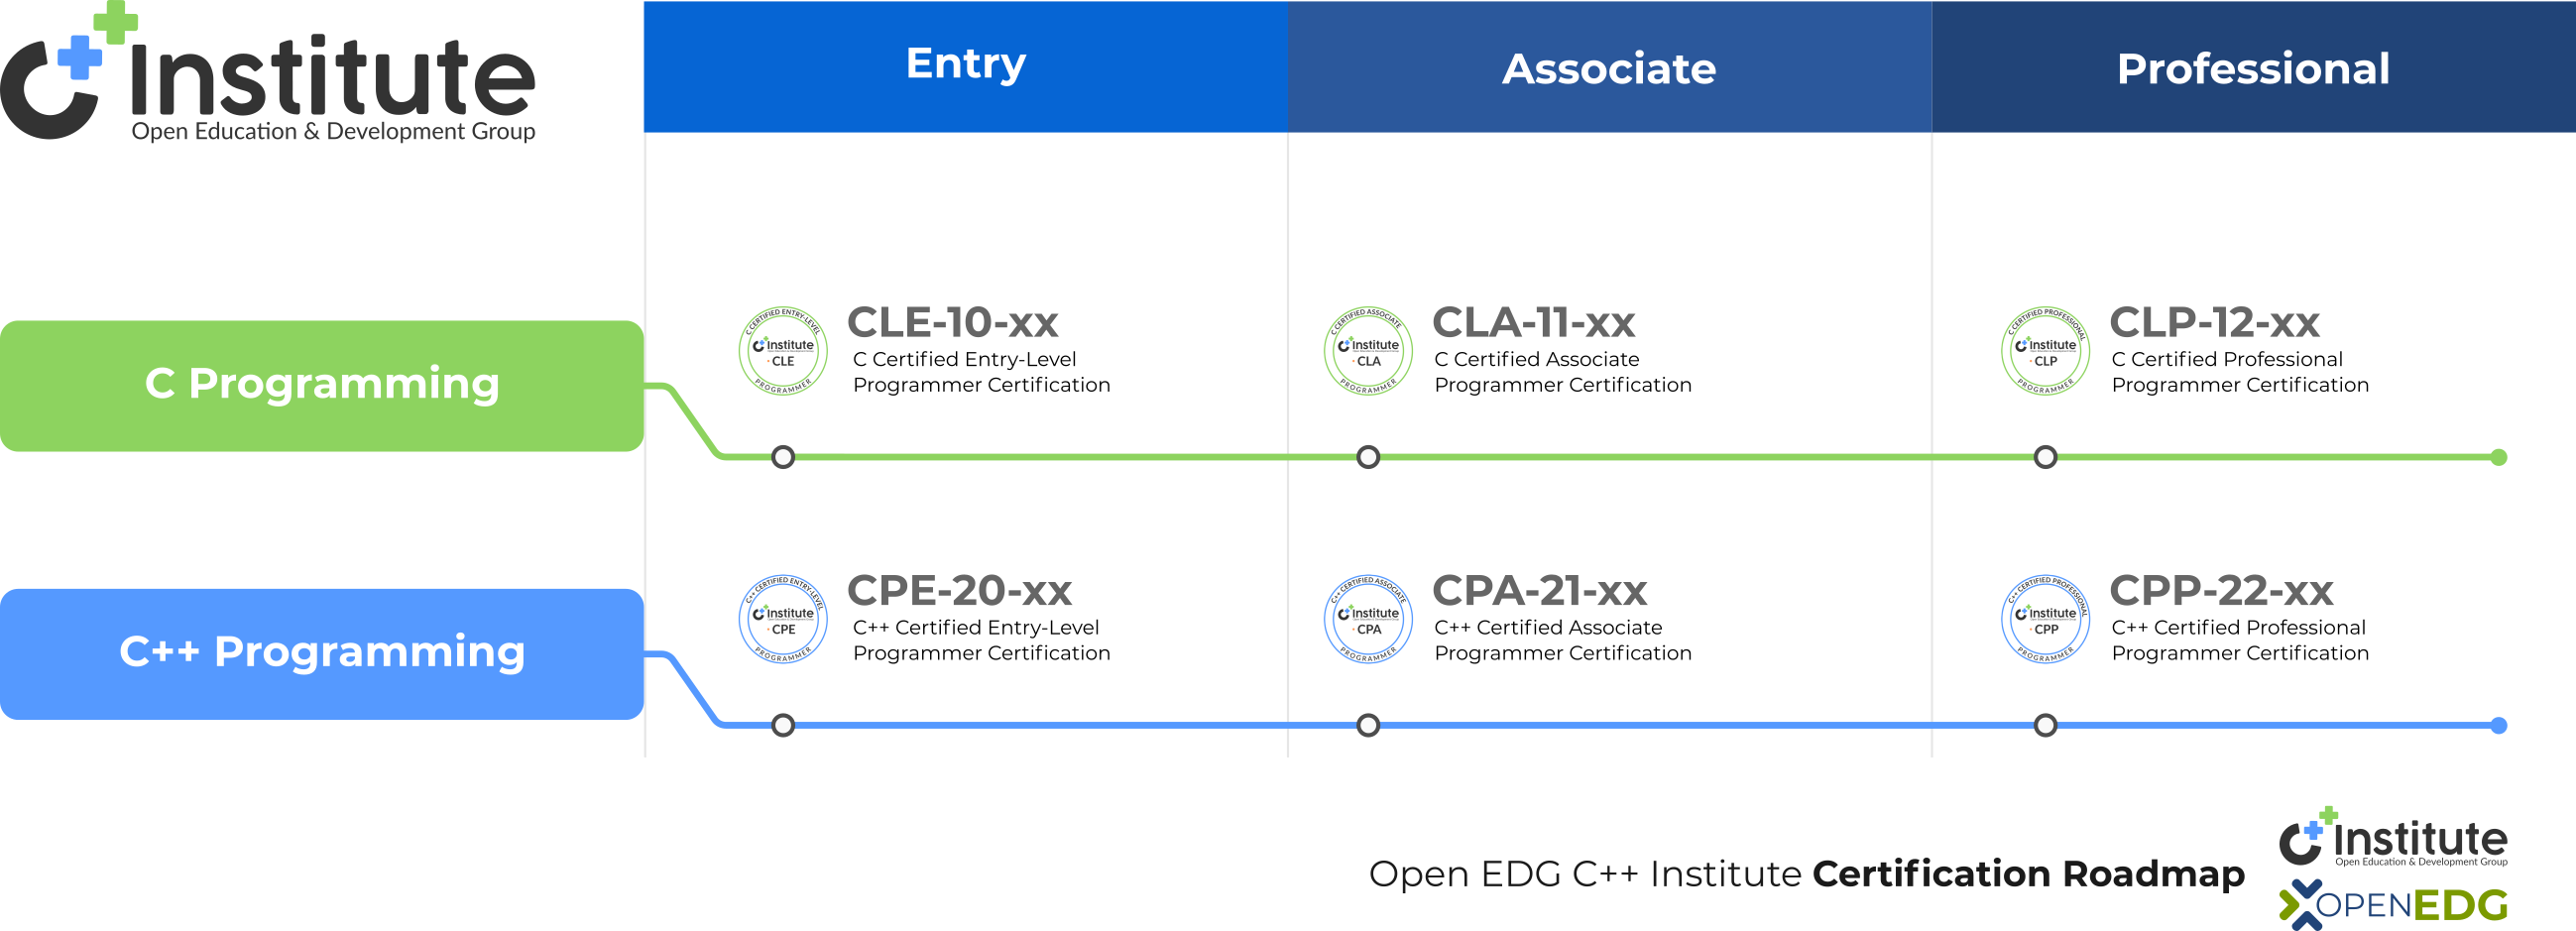 OpenEDG C++ Institute Certification Roadmap